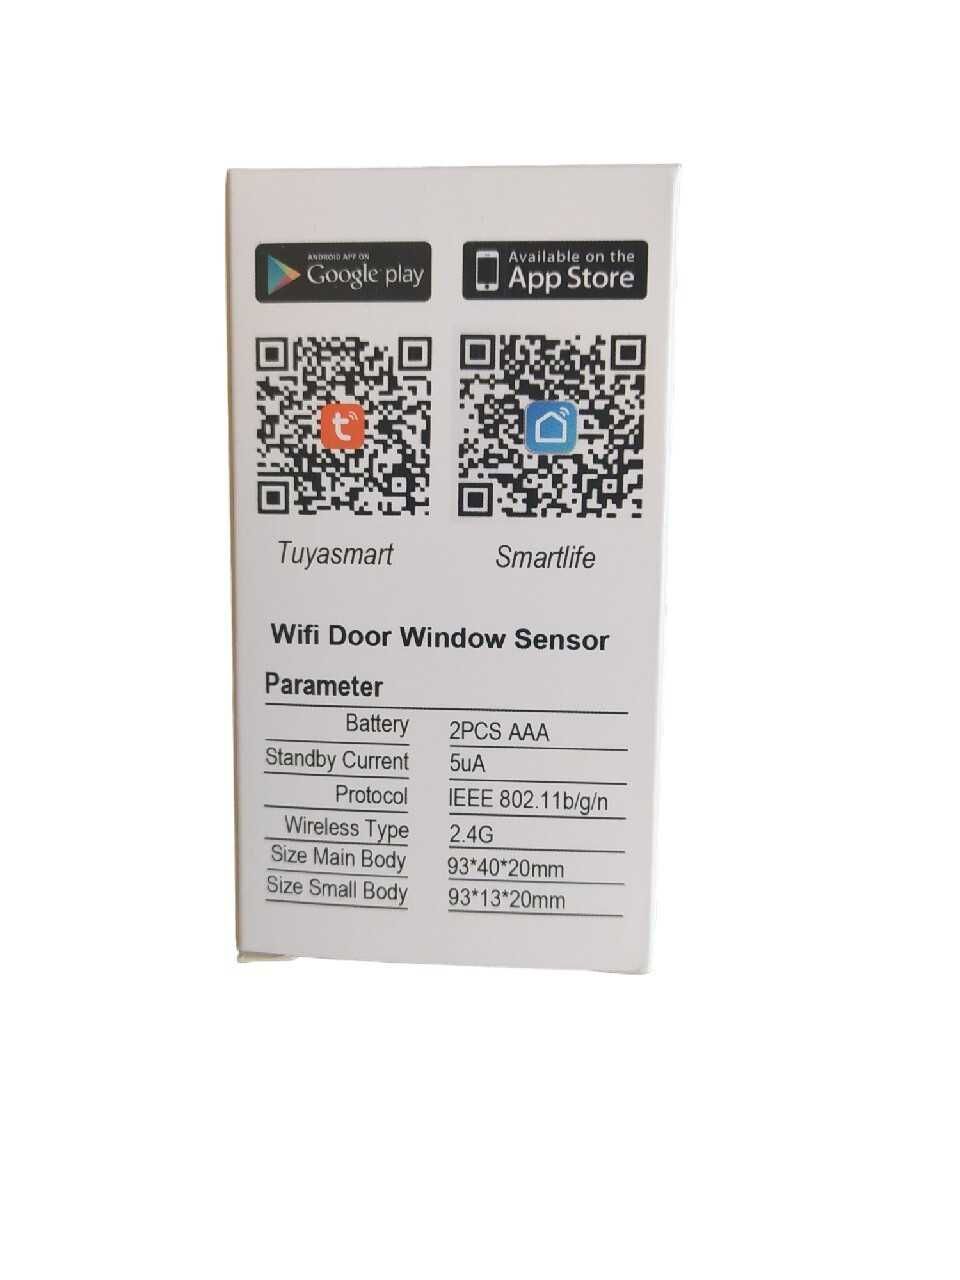 WiFI Door/Windows Sensor